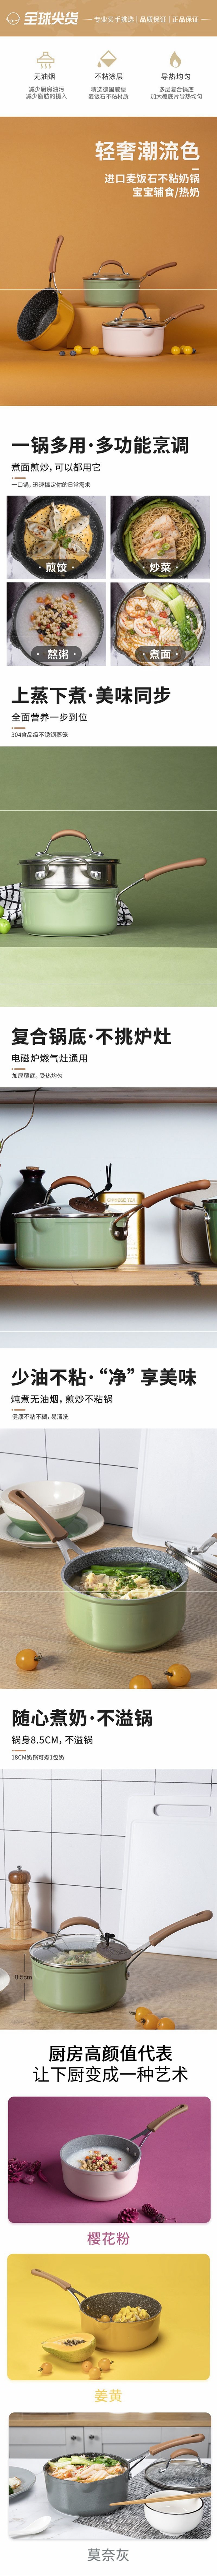 网易严选多色可选多功能锅 一锅多用轻松烹饪 奶锅 (灰色)18cm